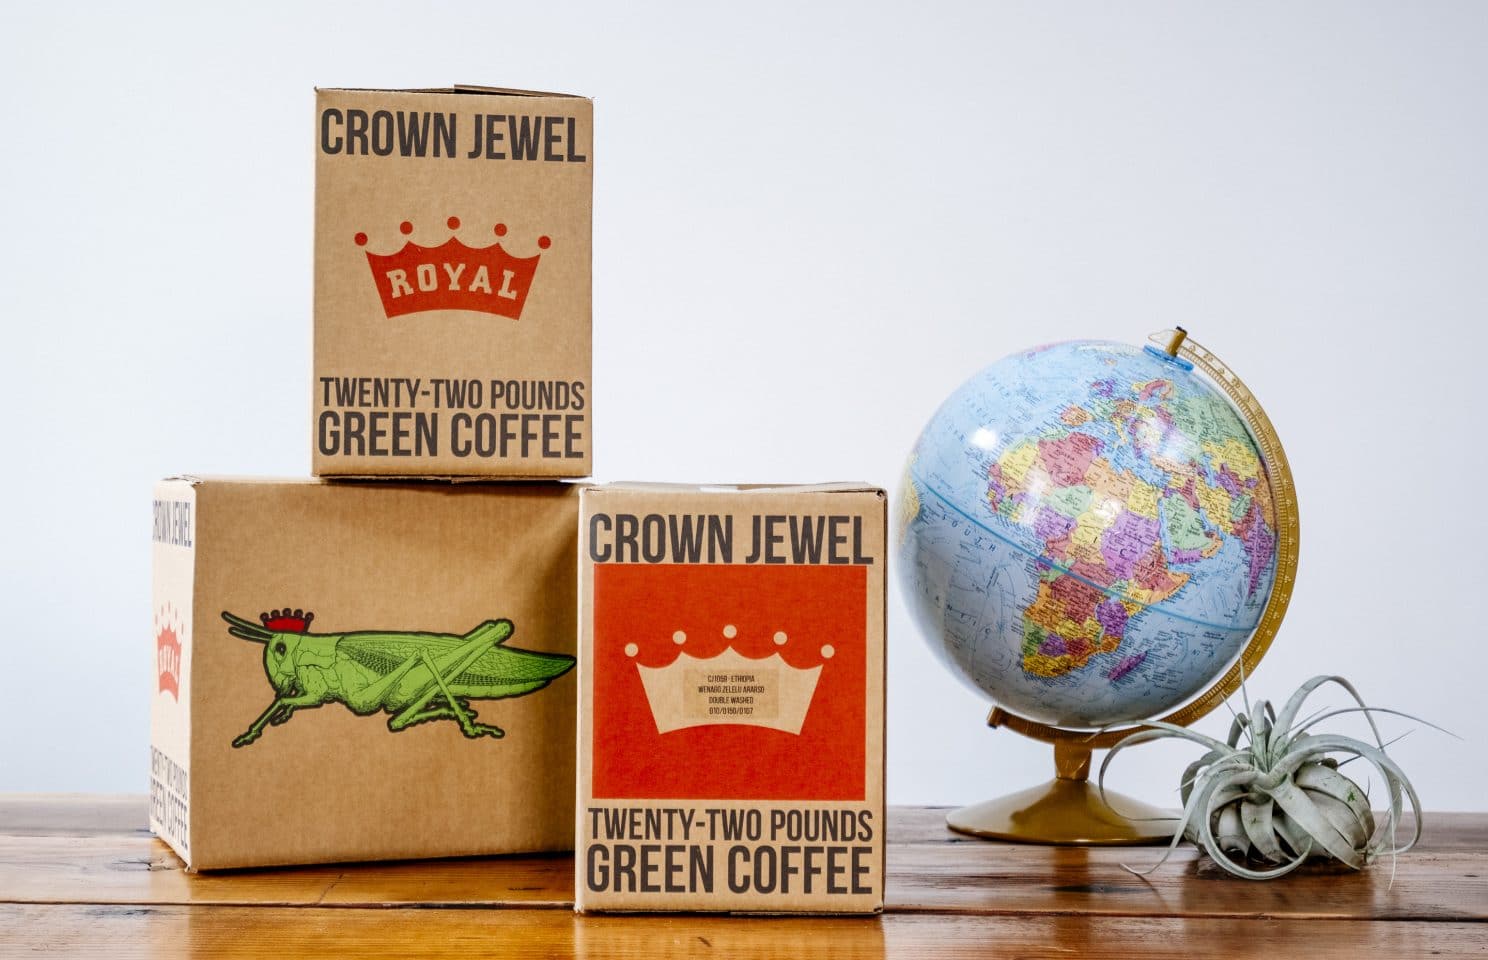 Royal Coffee Crown Jewel coffee